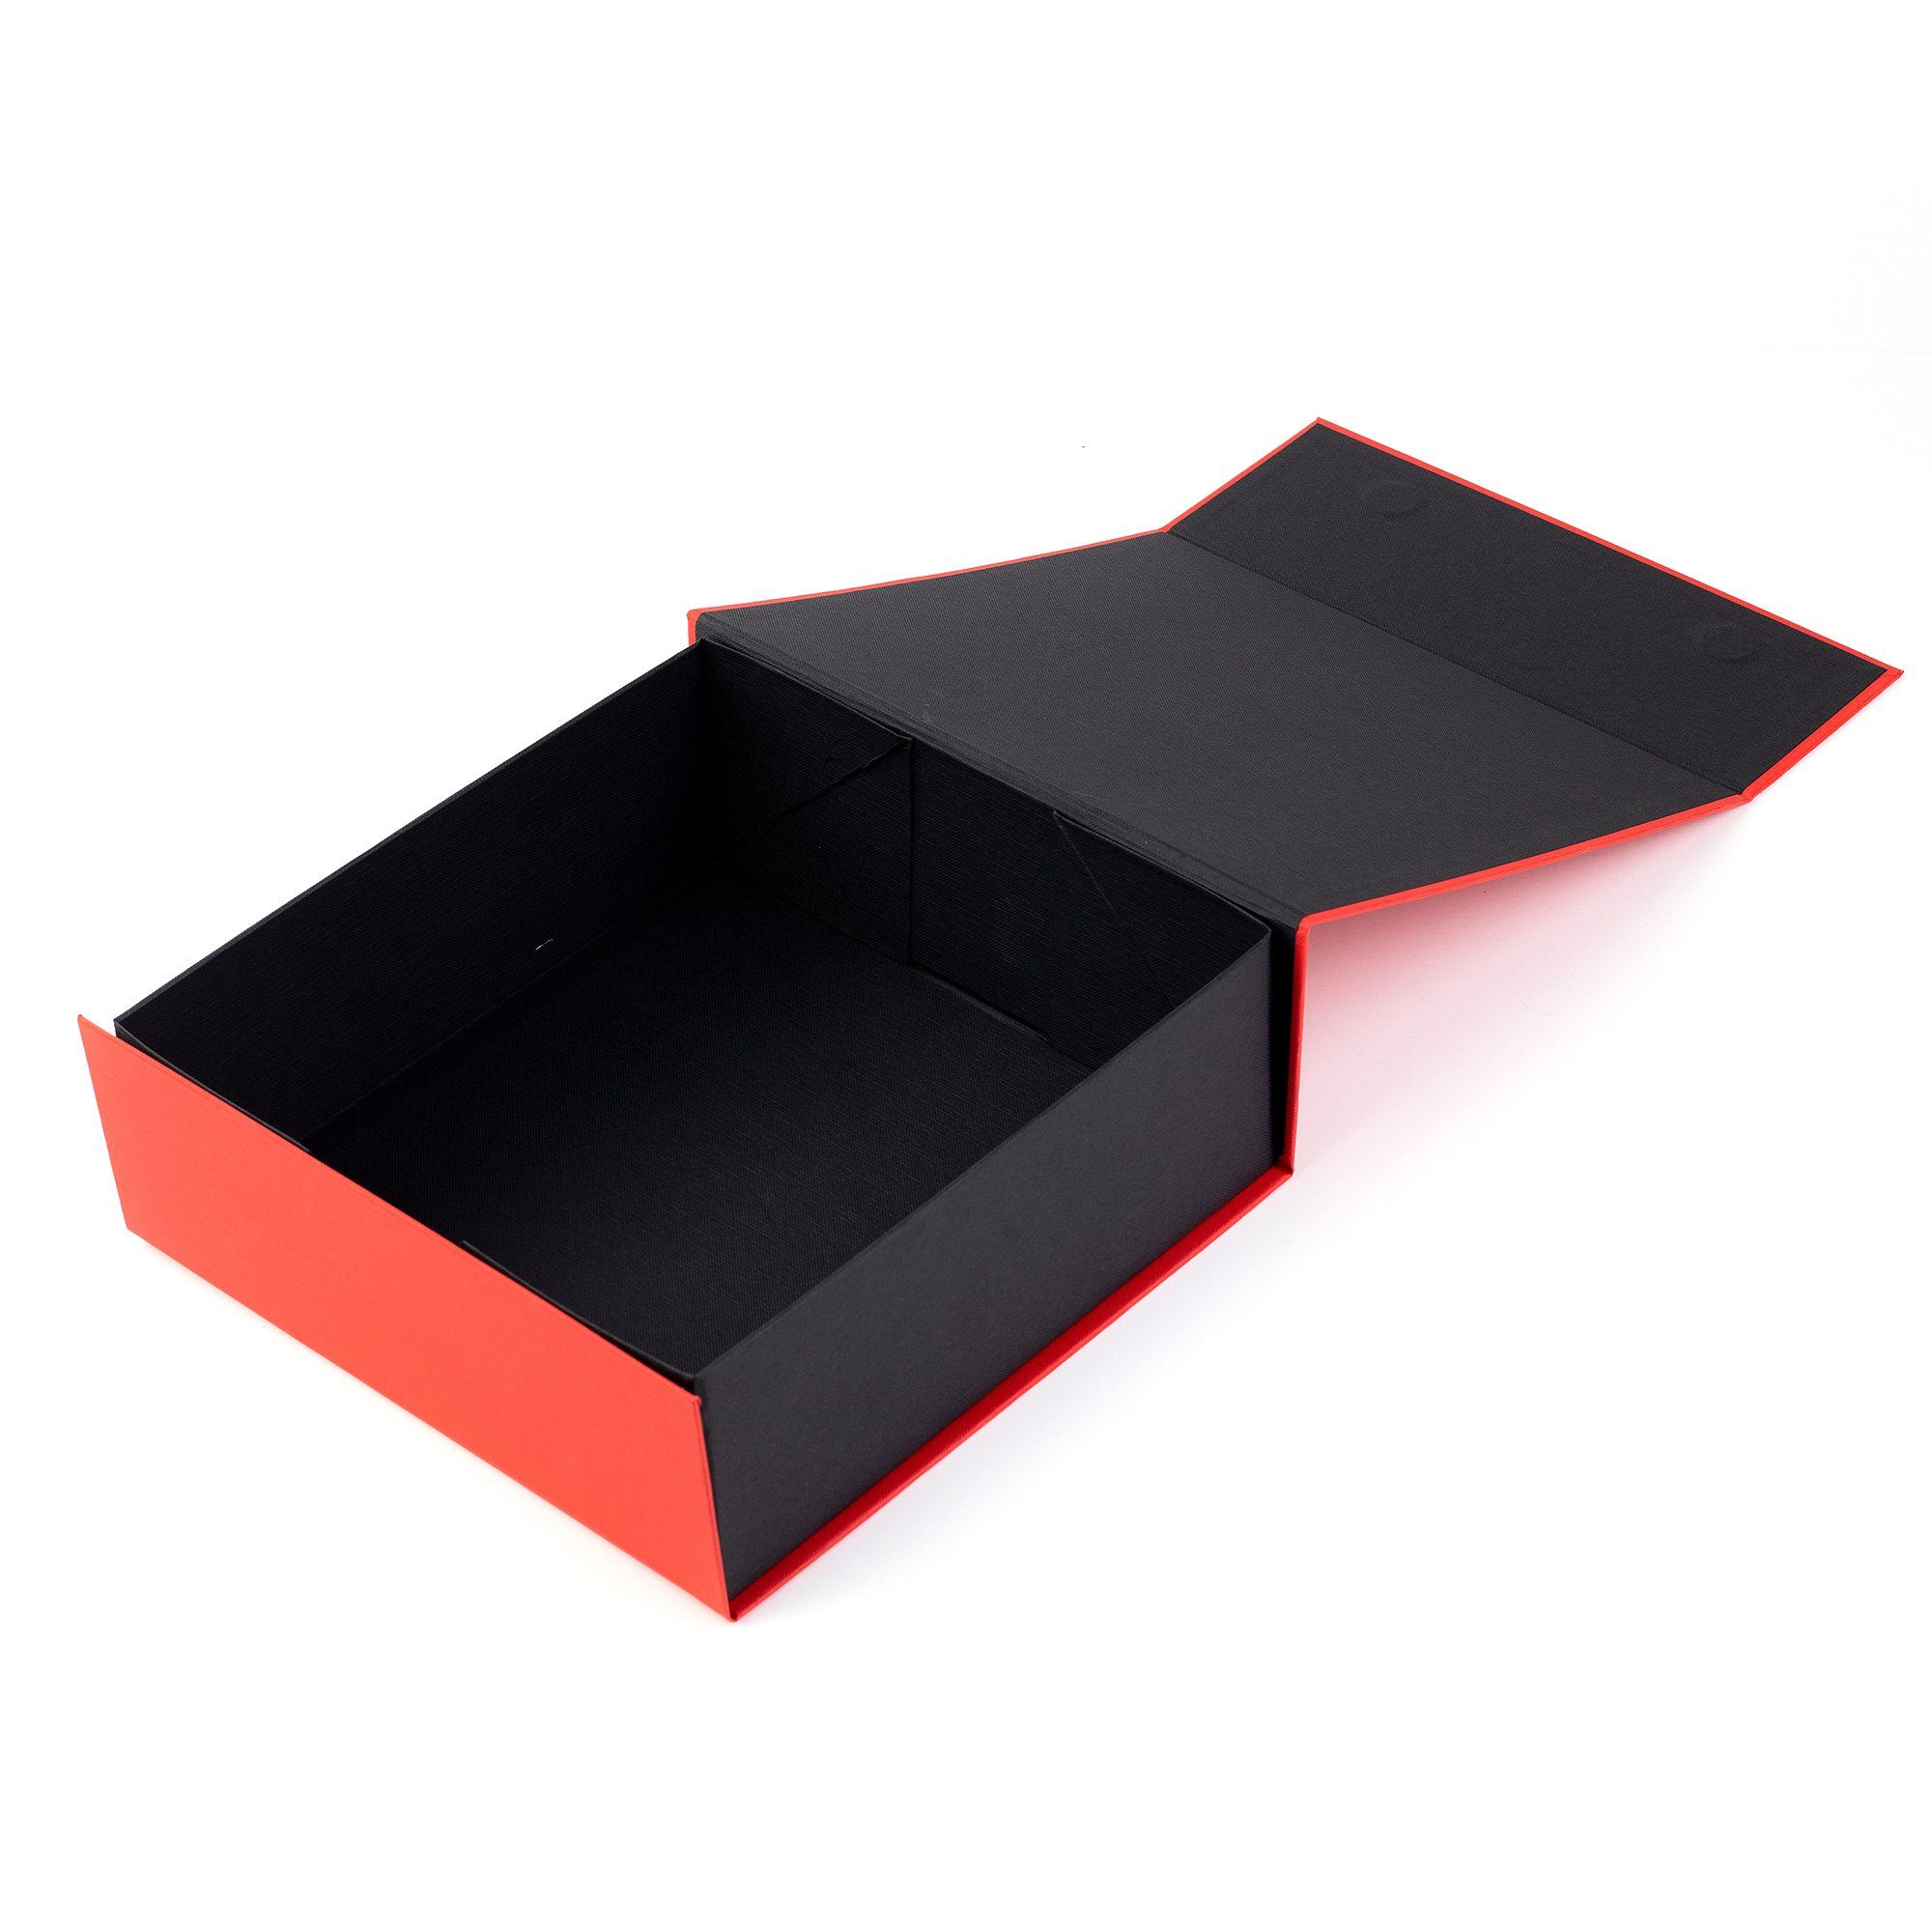 und und Hochzeiten, Geschenkbox Rechteck Rot AdelDream Geschenkbox Babybrautjungfer Magnet Geburtstagsgeschenk mit Aufbewahrungsbox Deckel für